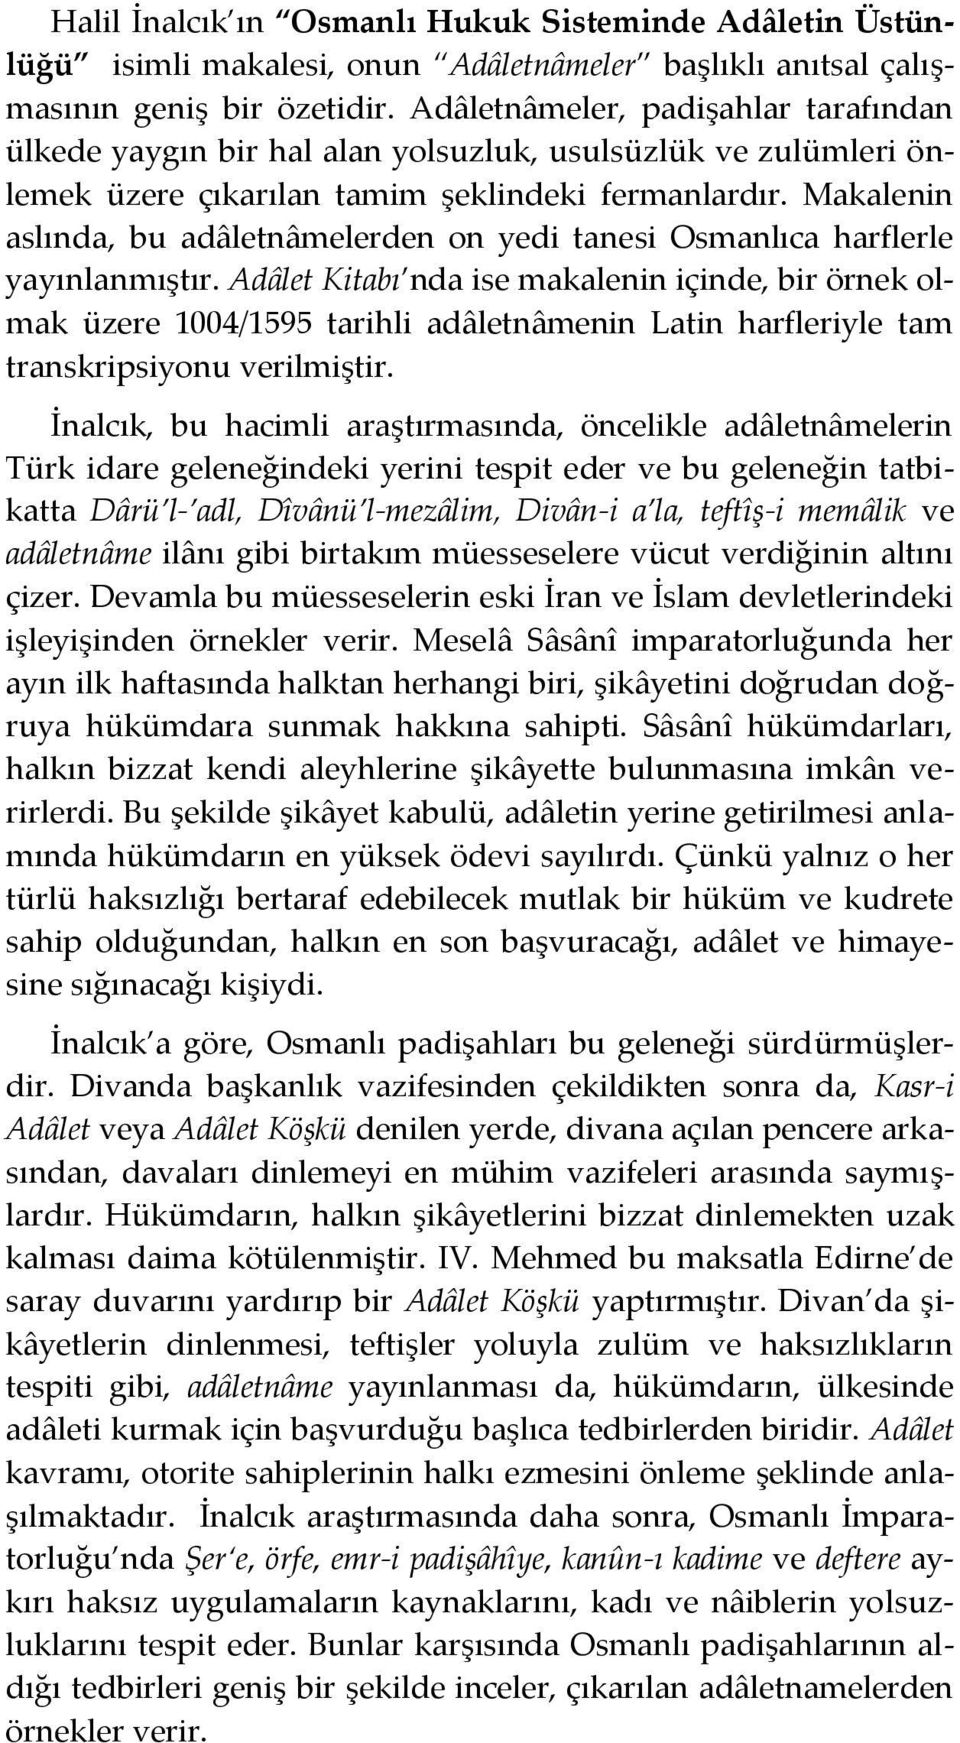 Makalenin aslında, bu adâletnâmelerden on yedi tanesi Osmanlıca harflerle yayınlanmıştır.